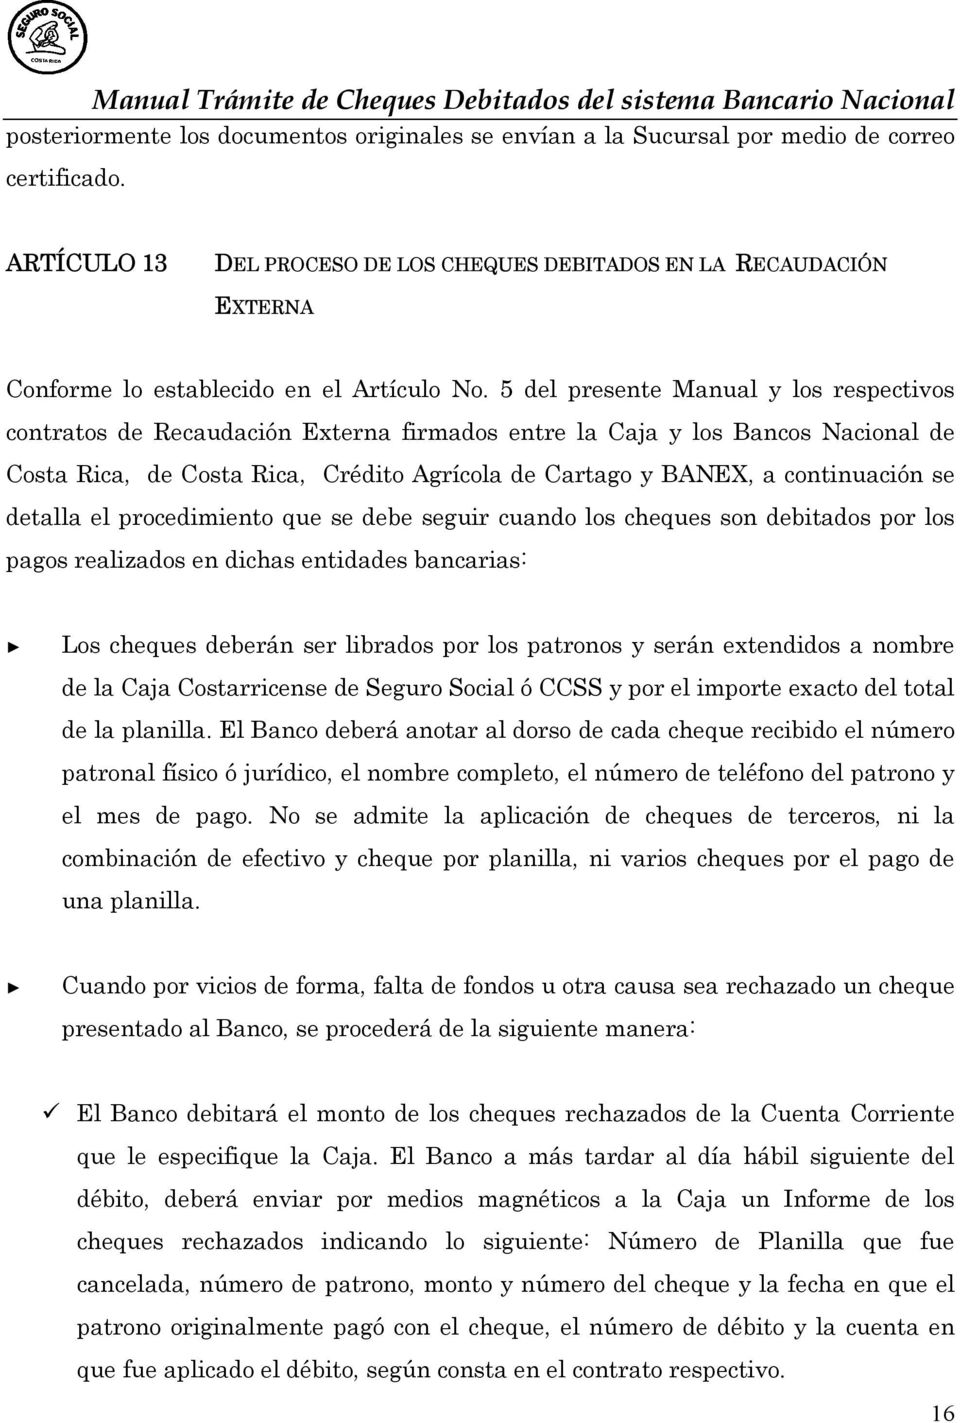 5 del presente Manual y los respectivos contratos de Recaudación Externa firmados entre la Caja y los Bancos Nacional de Costa Rica, de Costa Rica, Crédito Agrícola de Cartago y BANEX, a continuación